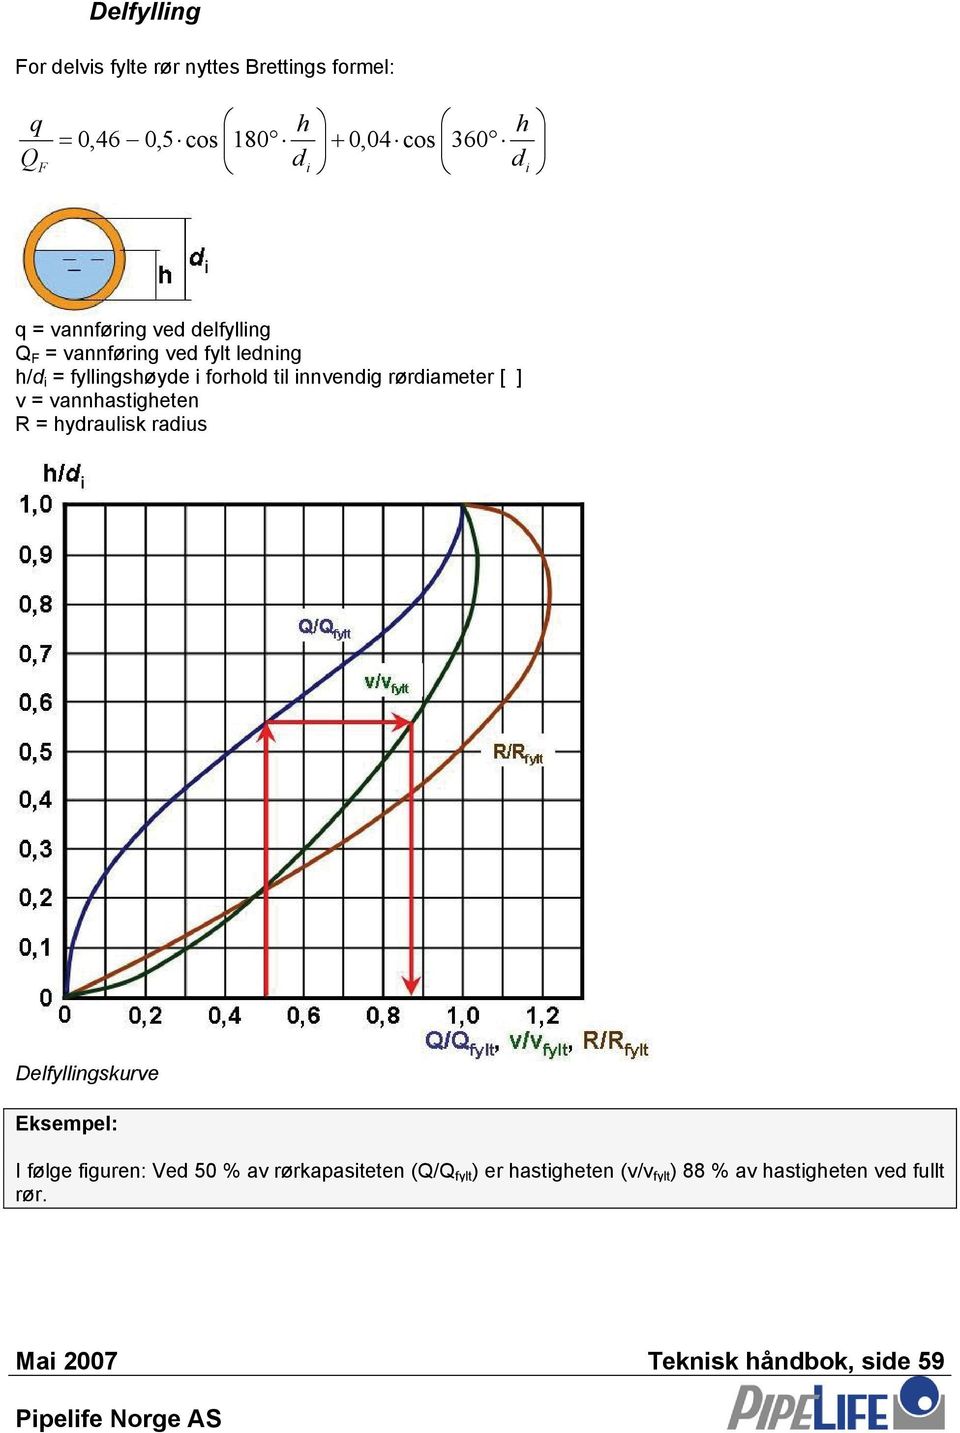 v = vannhatgheten R = hydrauk radu Defyngkurve Ekempe: I føge fguren: Ved 50 % av rørkapateten (Q/Q